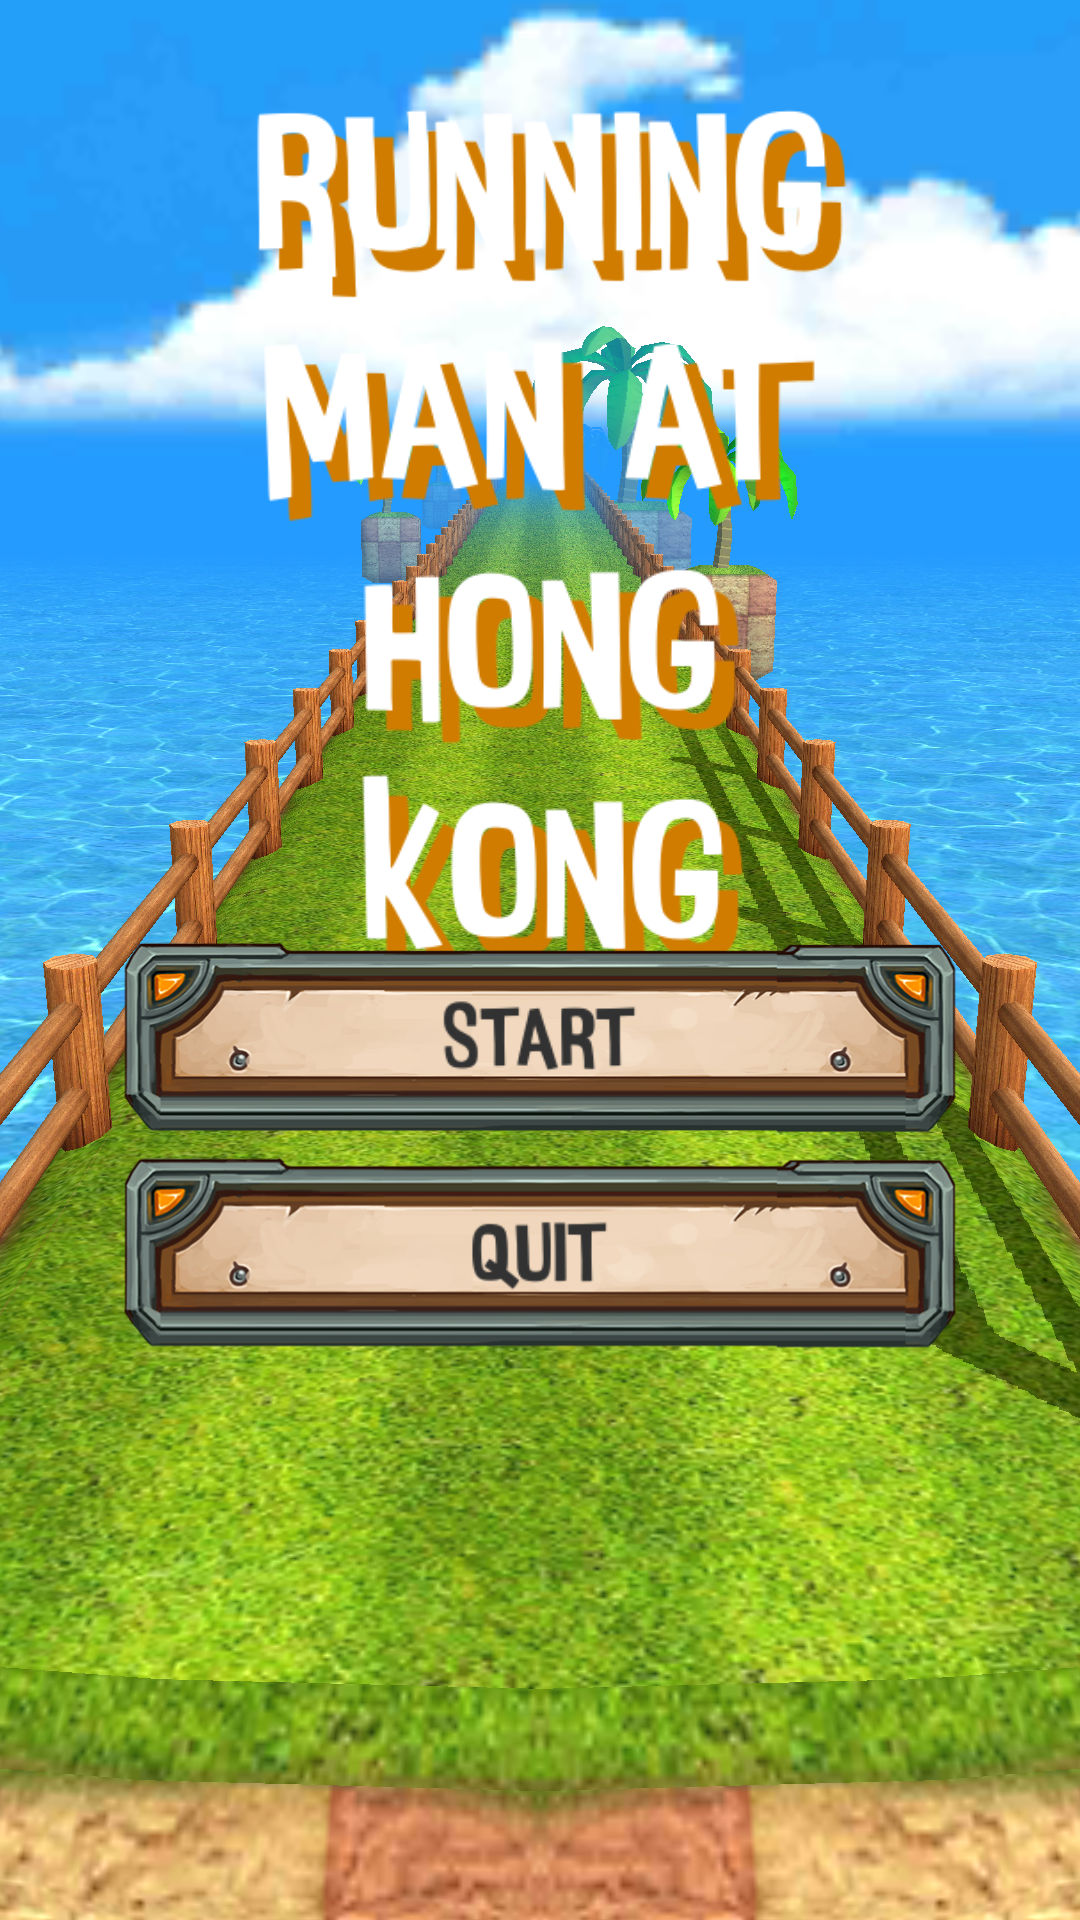 Screenshot 1 of Running Man at Hong Kong 香港と一緒に走る 1.2